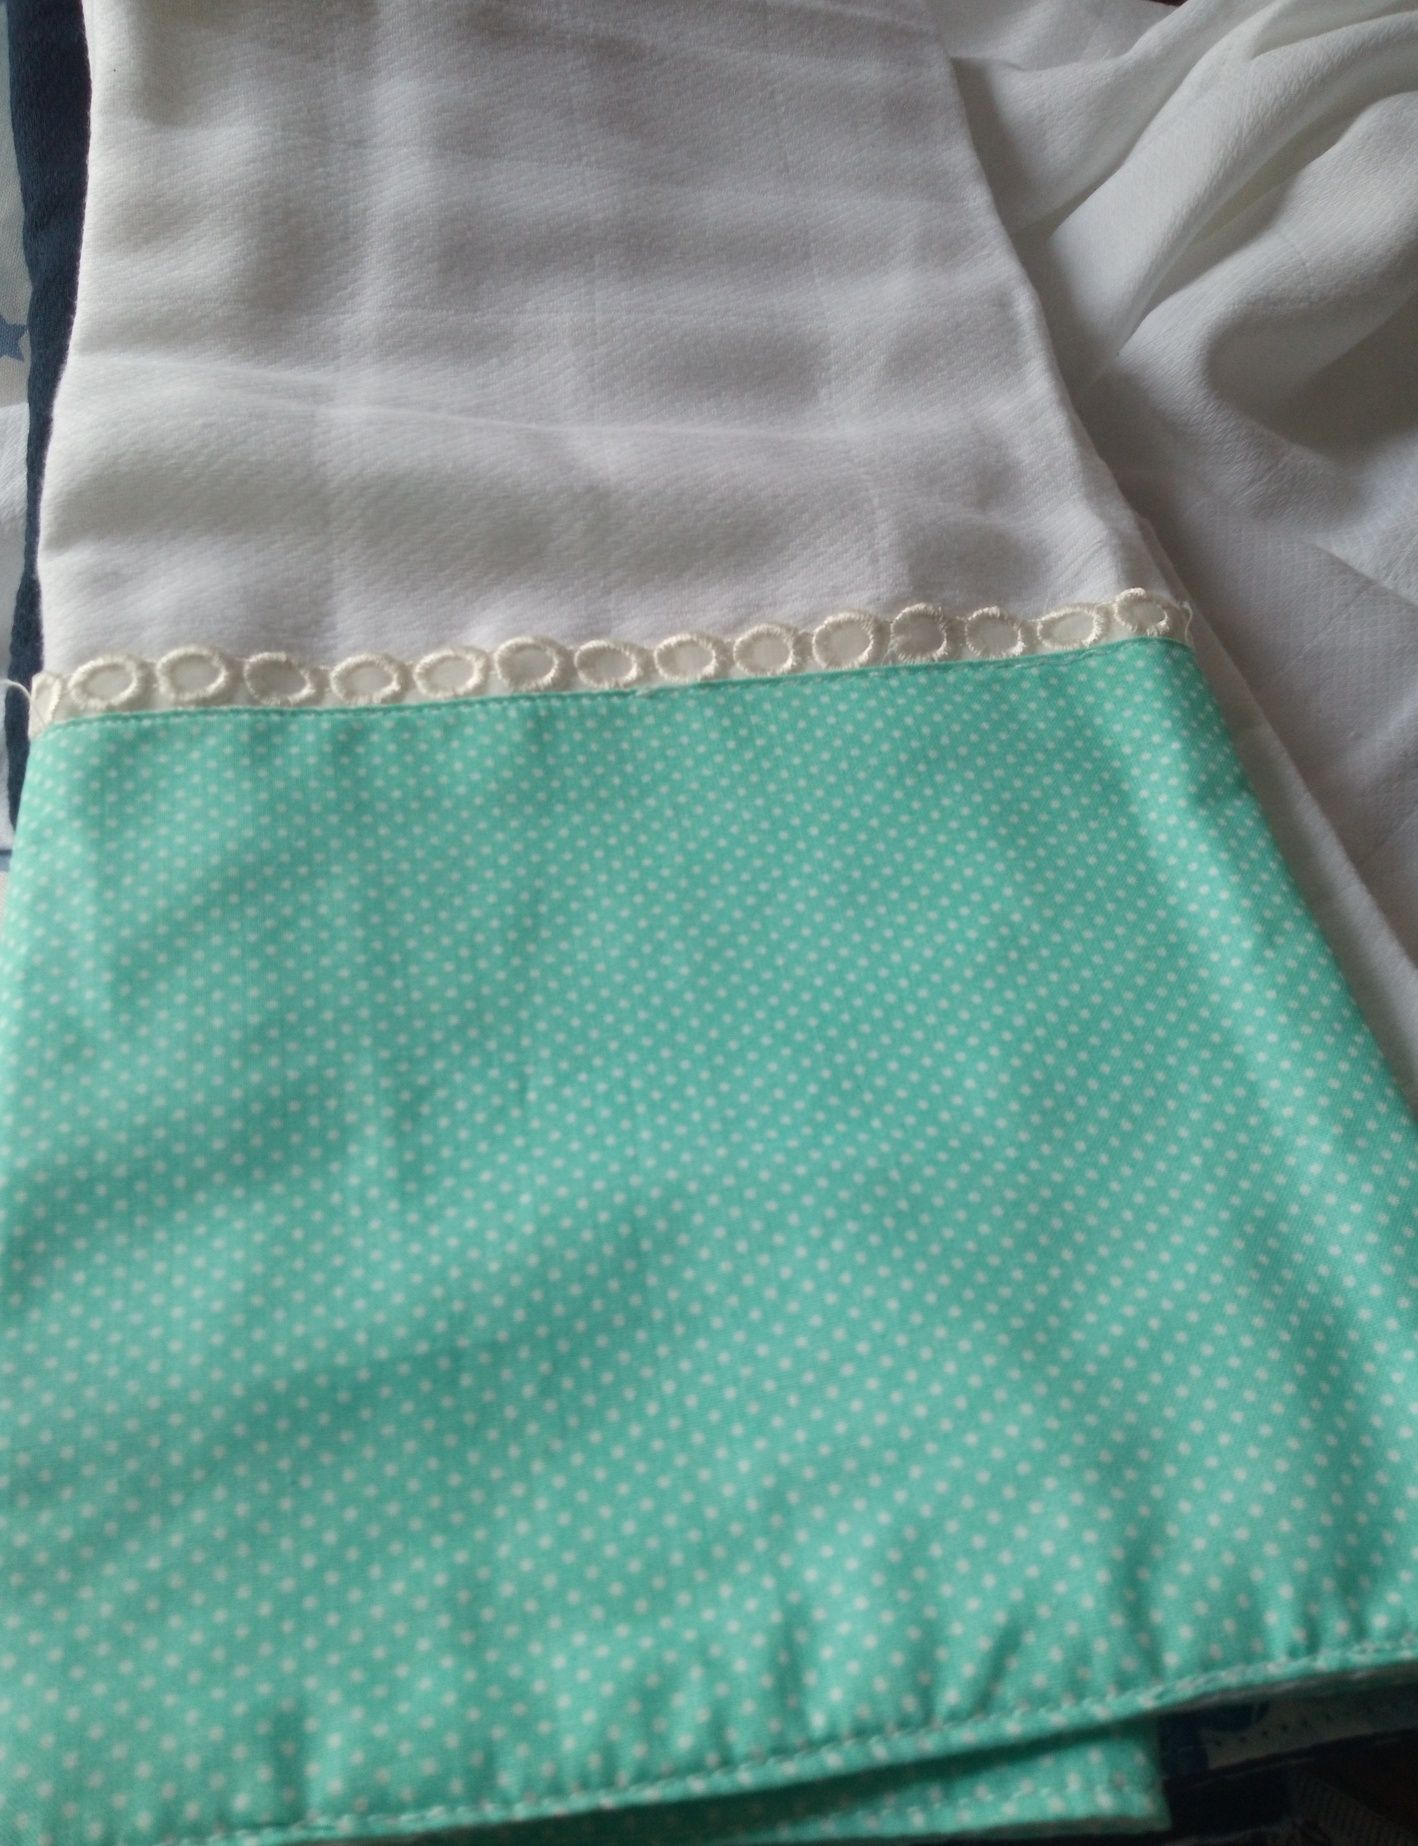 Fraldas decoradas com tecido estampado